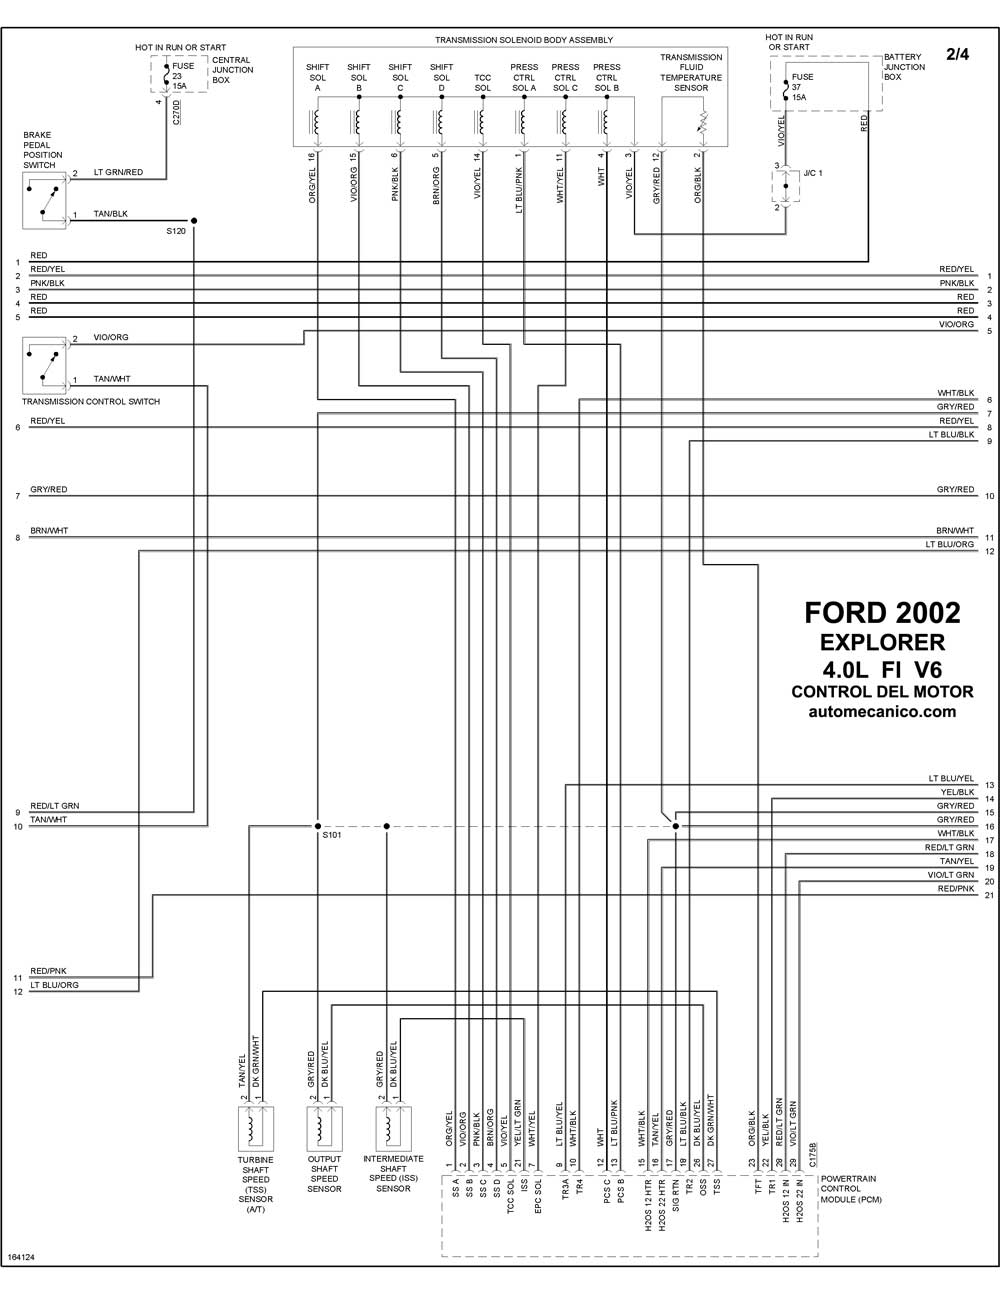 FORD - Diagramas control del motor 2002 - Graphics - Esquemas | Vehiculos -  Motores - Componentes | Mecanica automotriz